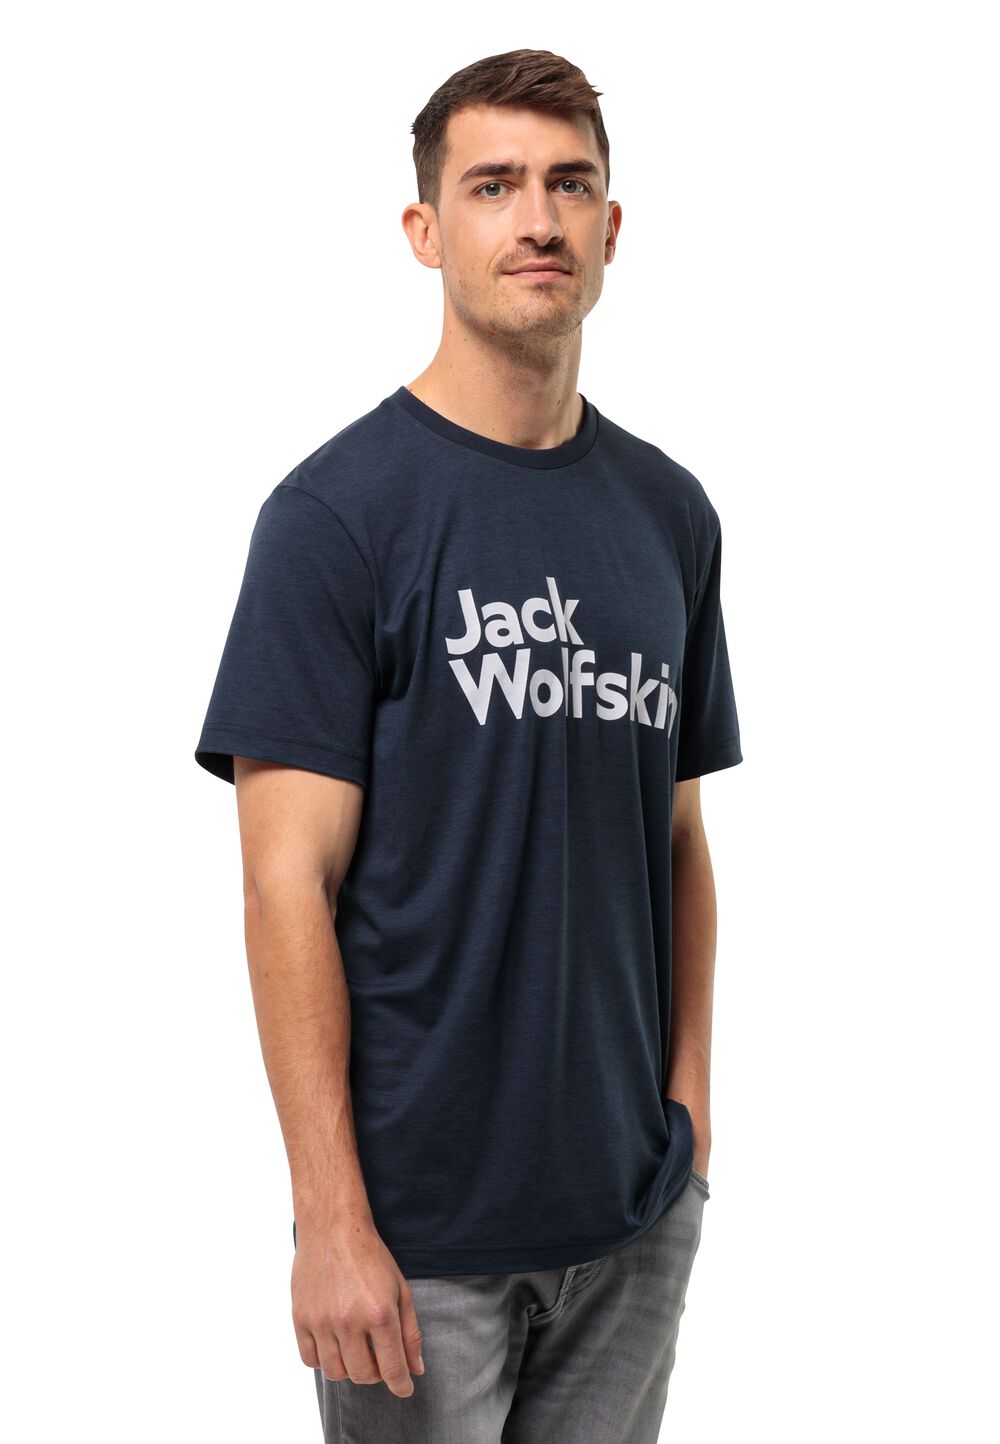 Jack Wolfskin Brand T-Shirt Men Functioneel shirt Heren XL blue night blue